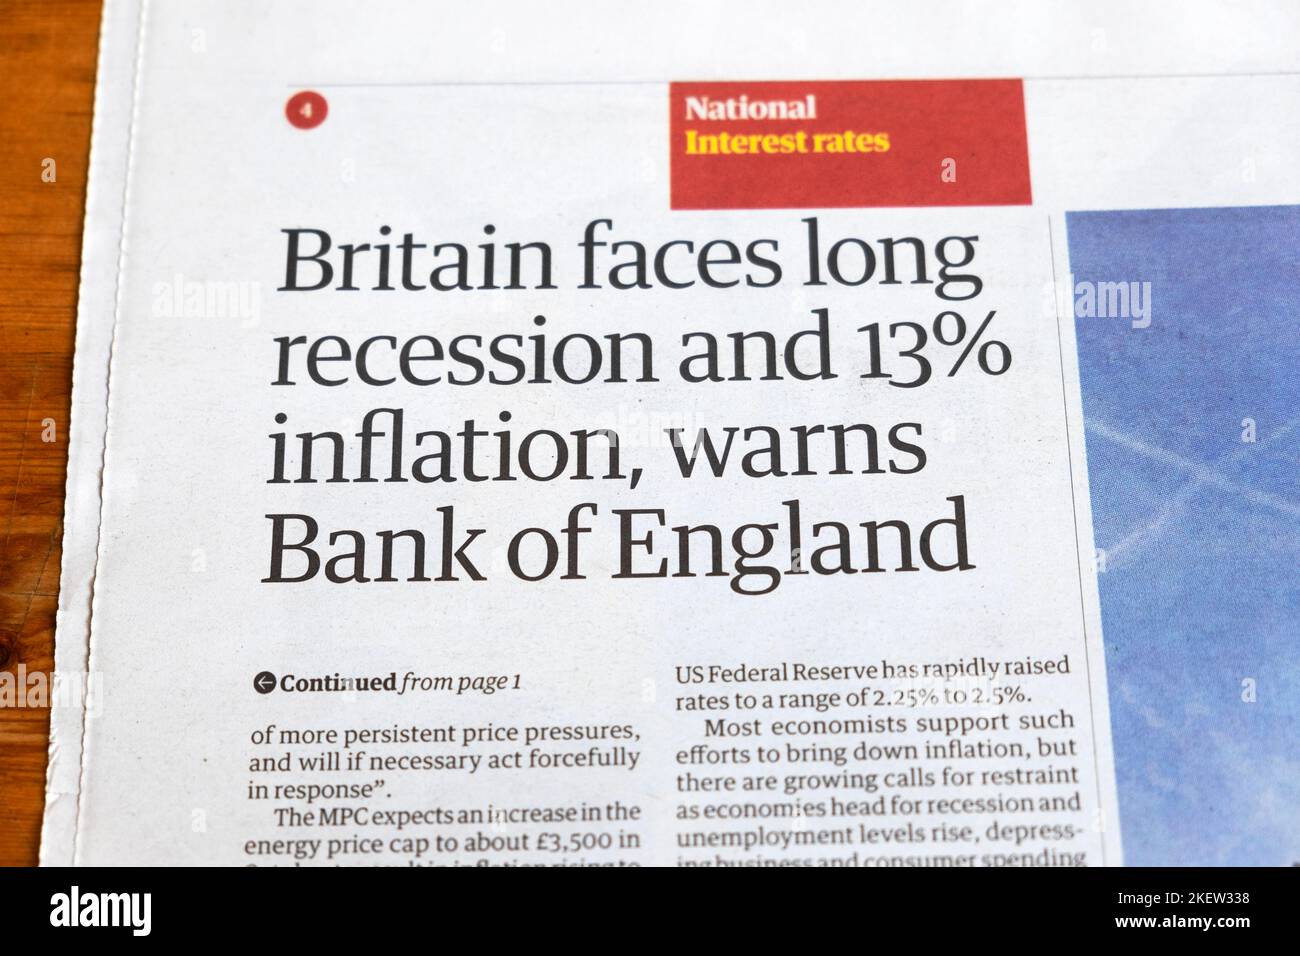 "La Gran Bretagna deve affrontare una lunga recessione e un'inflazione del 13%, avverte il quotidiano Guardian della Bank of England, articolo sui tassi di interesse del quotidiano Guardian 2022 UK Foto Stock